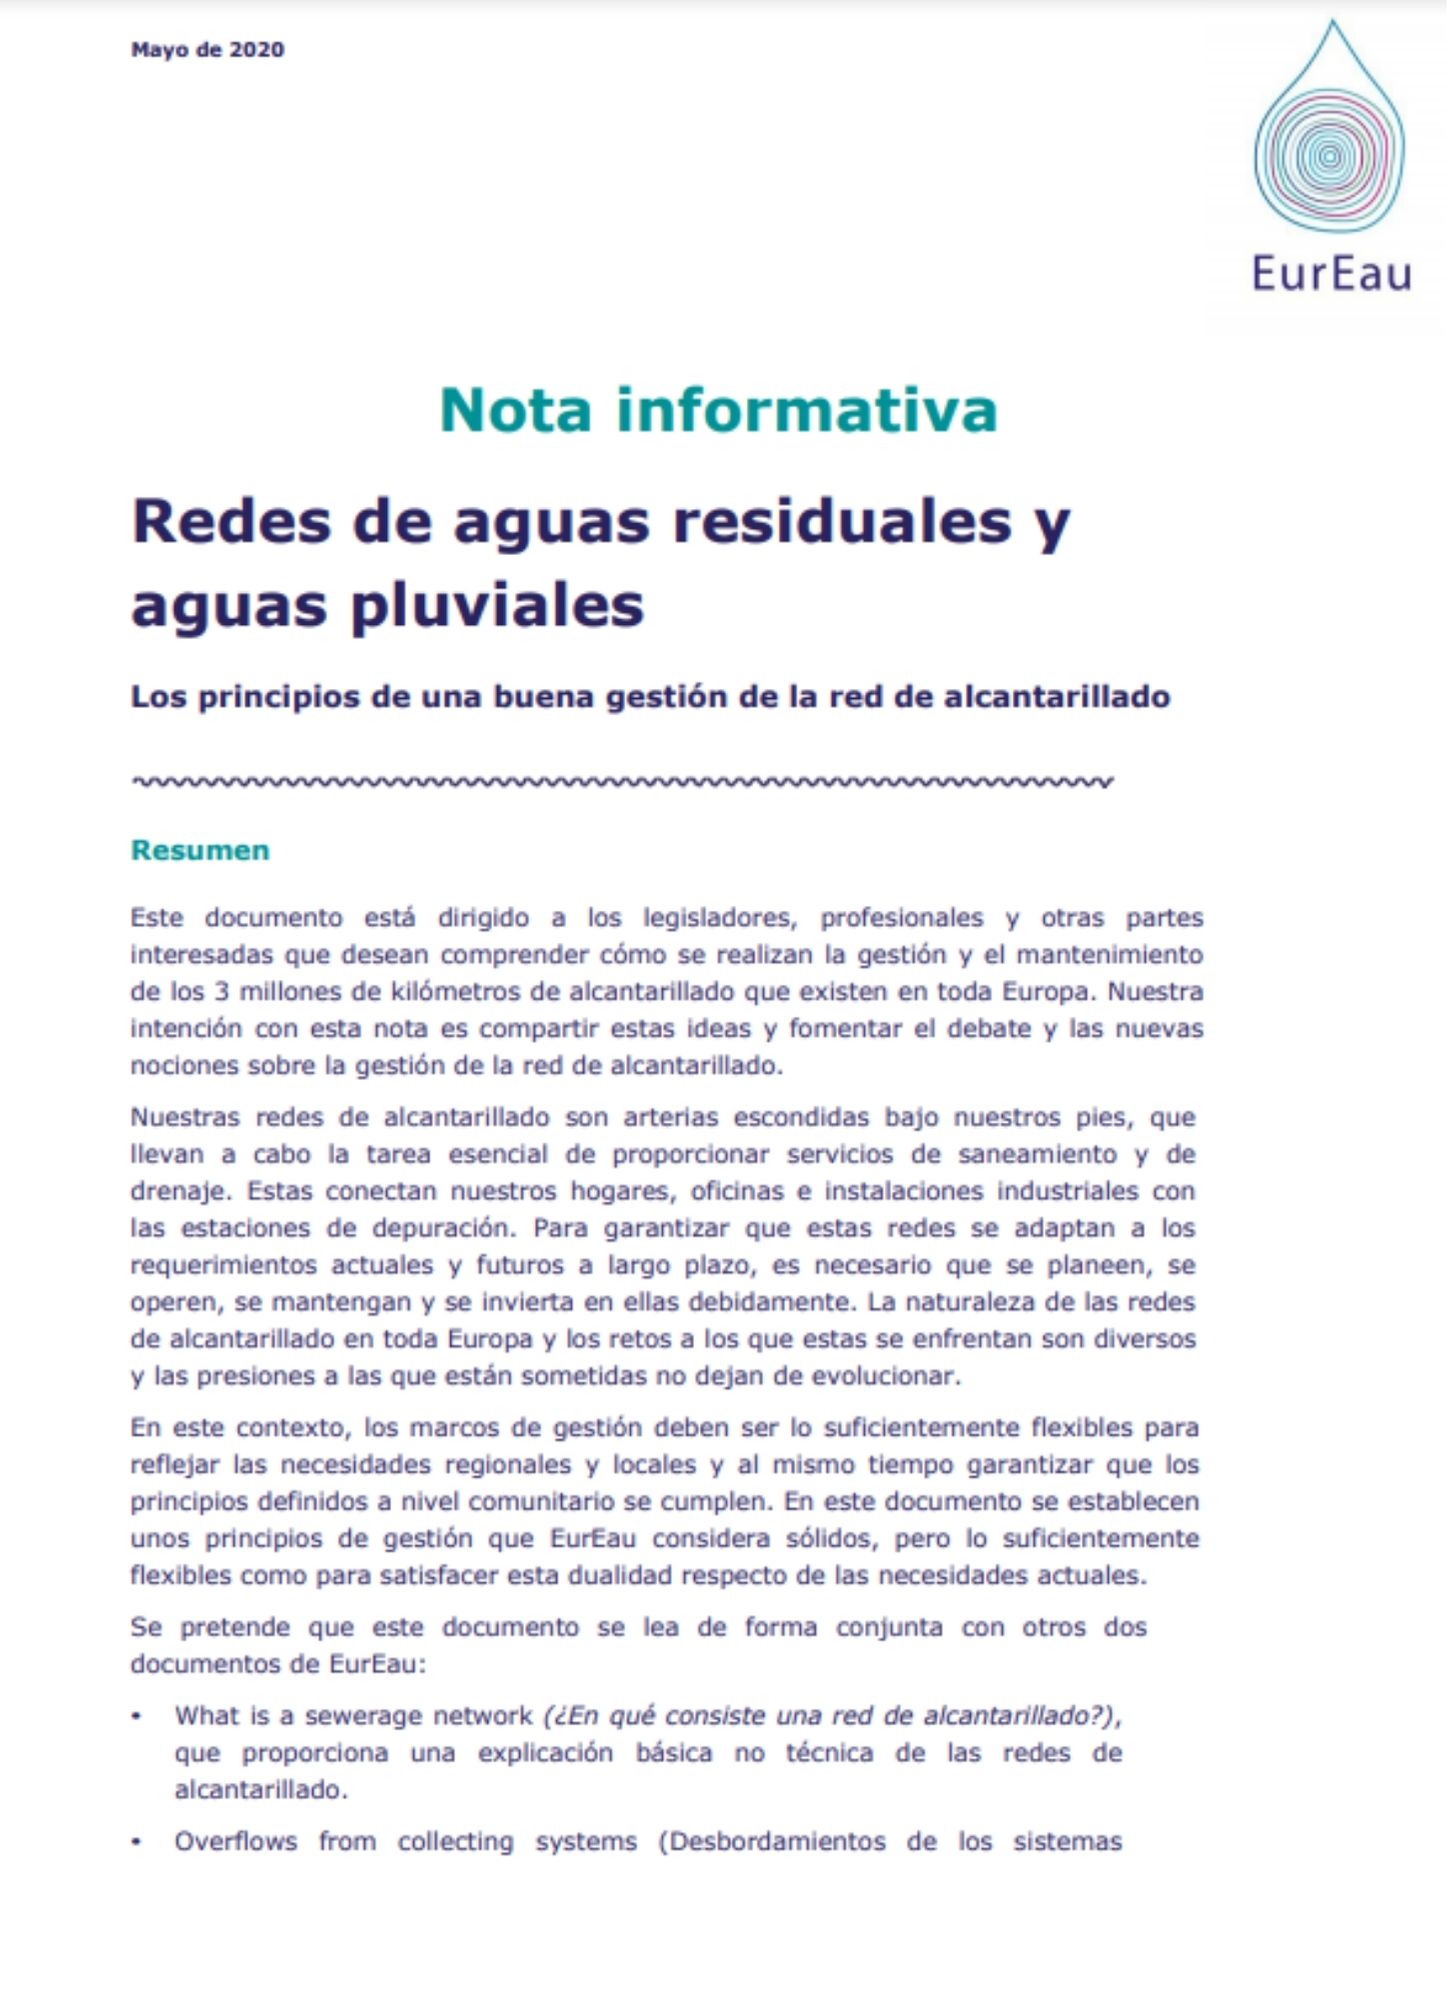 Nota informativa EurEau Gestión de las redes de aguas residuales y de aguas pluviales